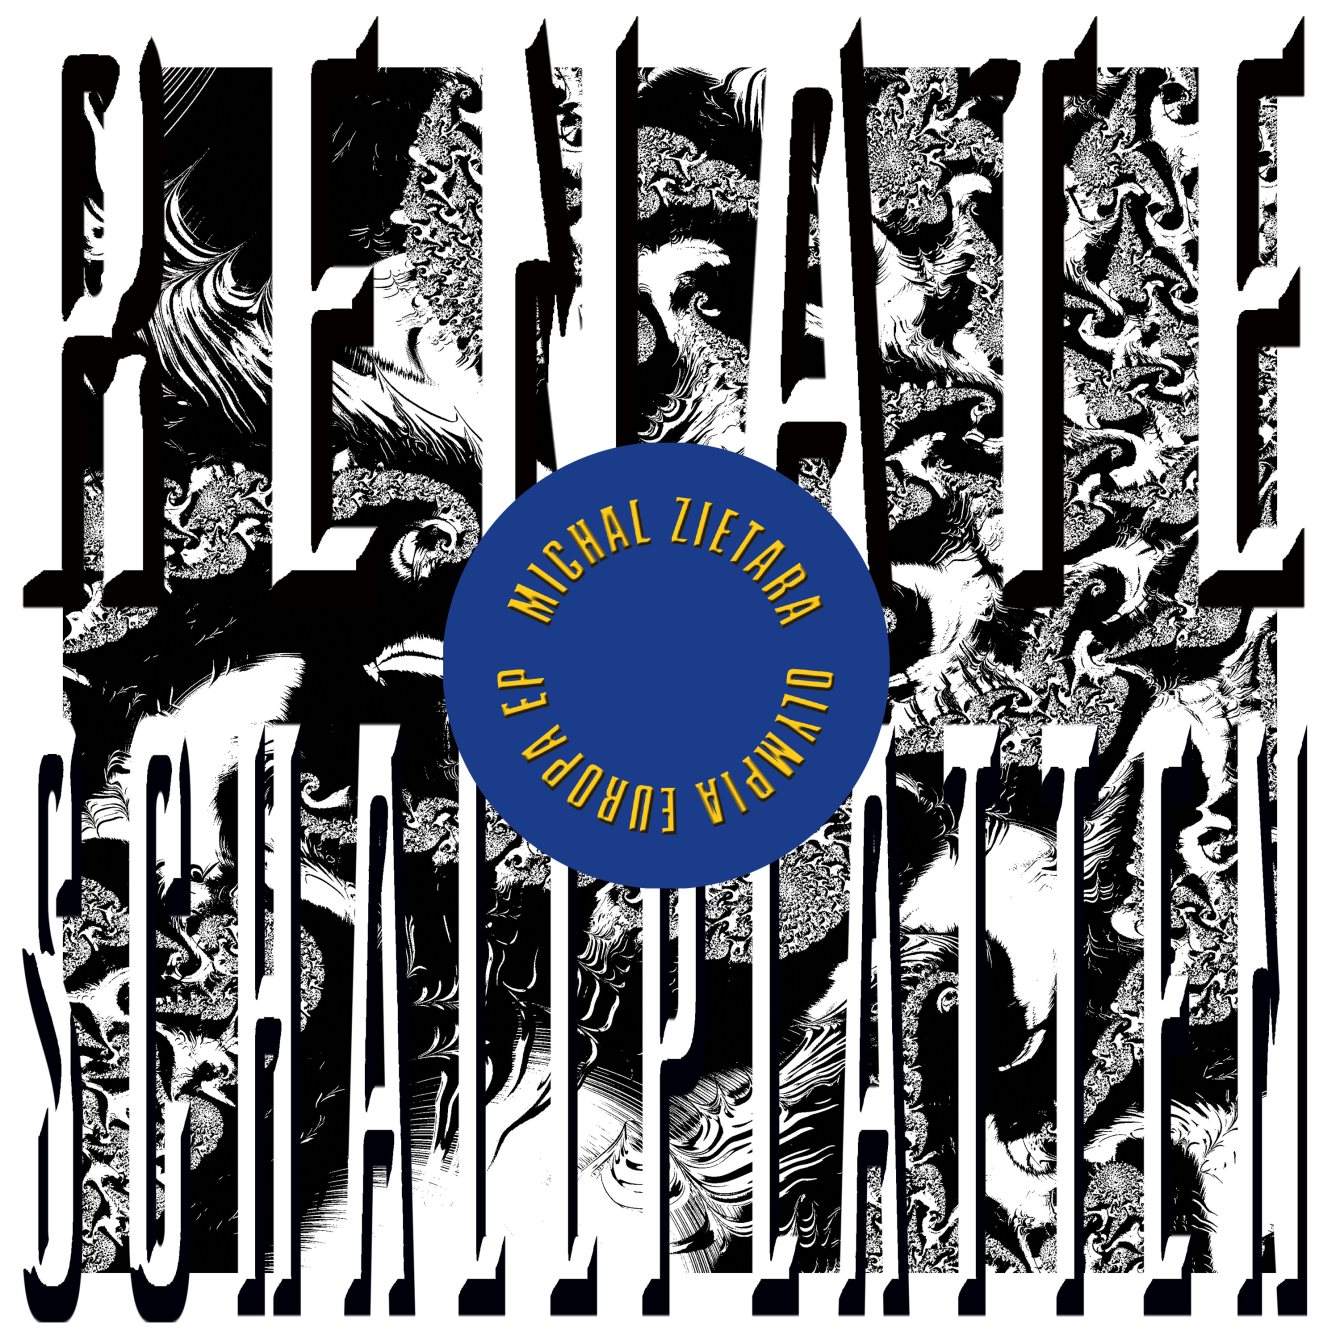 Renate Schallplatten 08 Release w. Ian Pooley, Zombies in Miami, Michal Zietara - フライヤー表